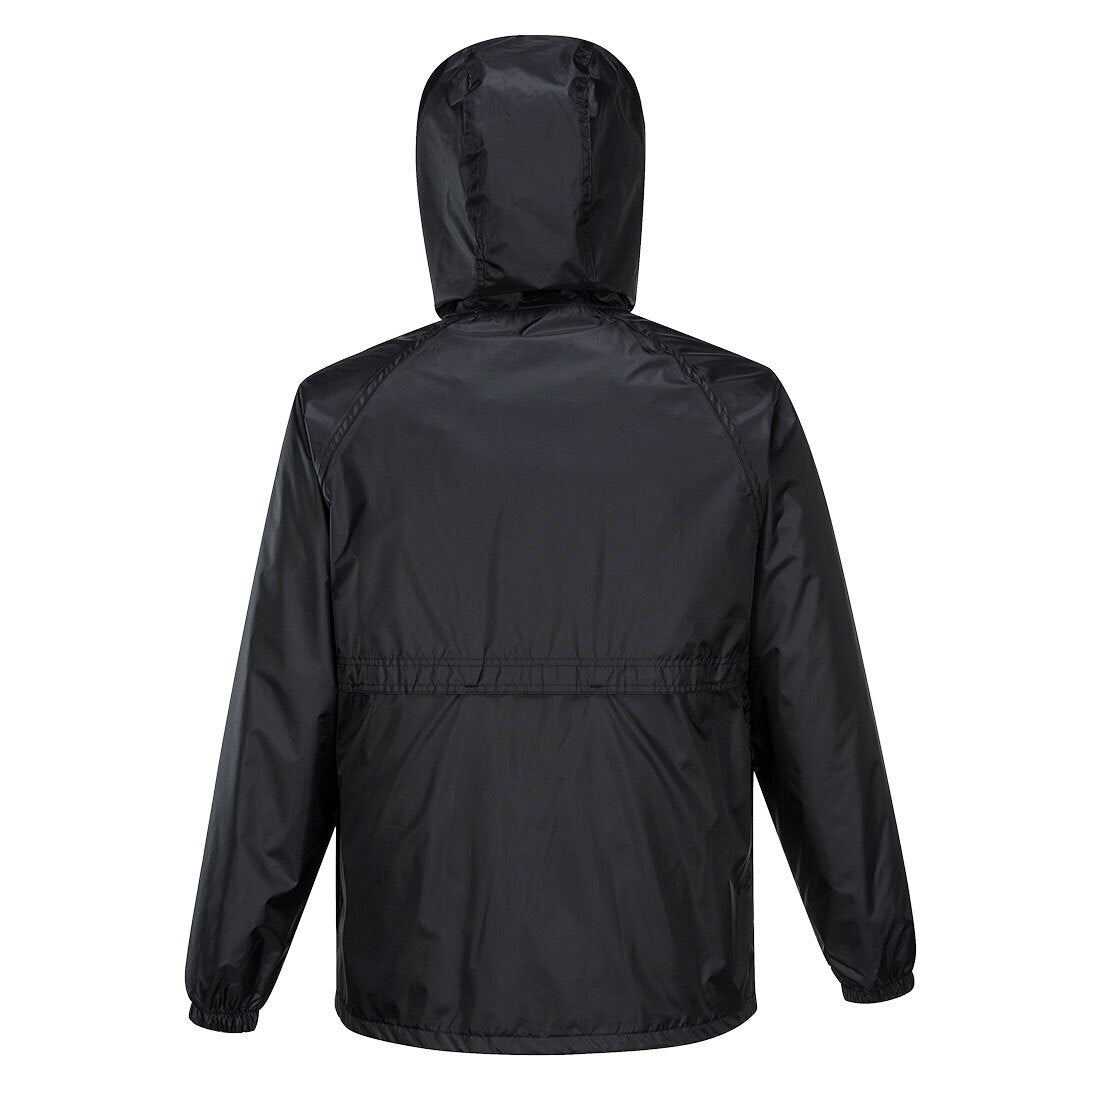 HUSKI STRATUS RAIN JACKET Waterproof Workwear Concealed Hood Windproof Packable - Black - S